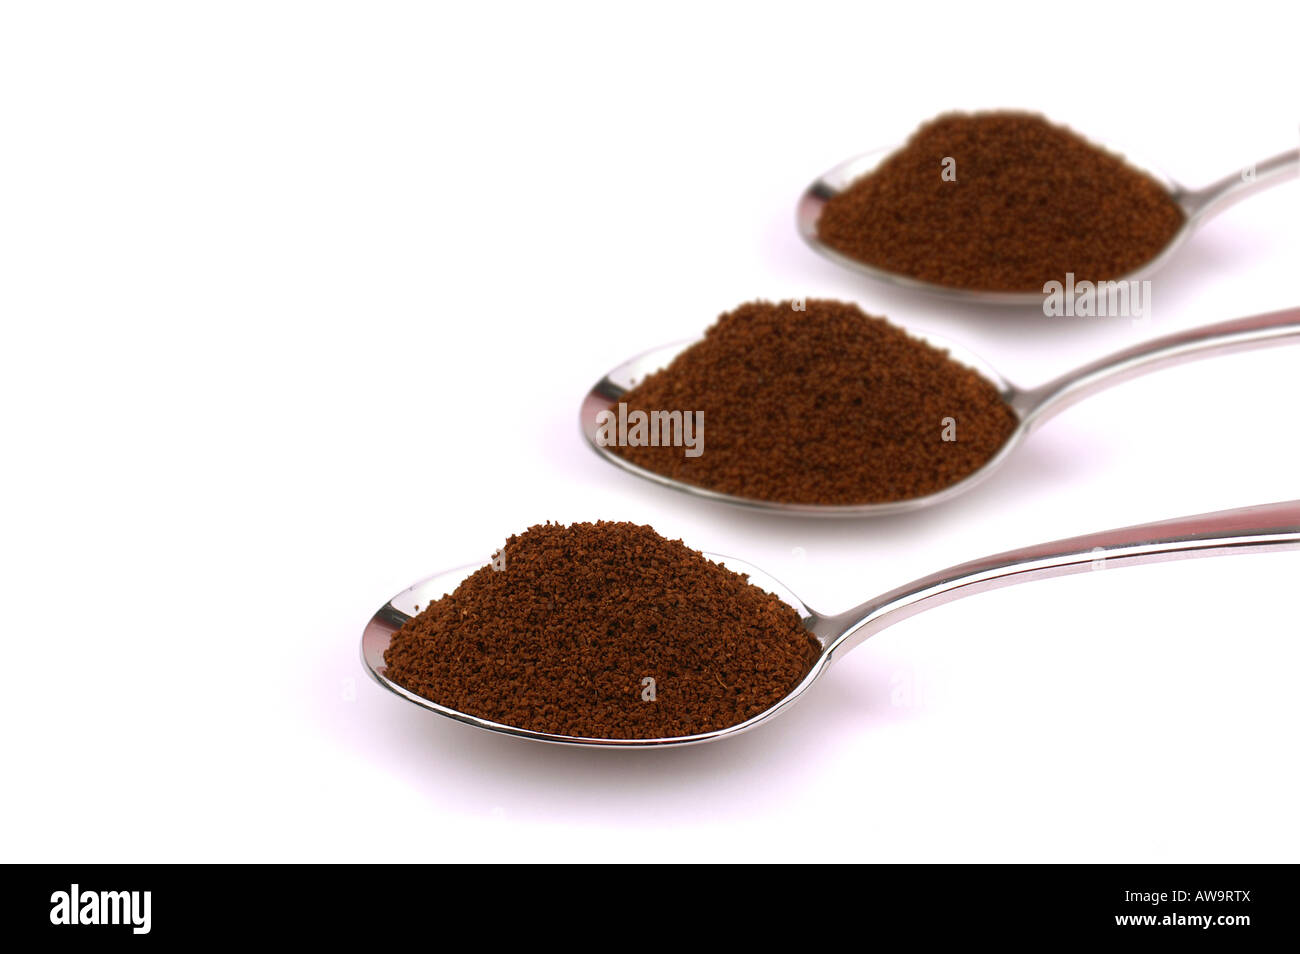 Cucchiai di caffè /Löffel mit gemahlenem Kaffee Foto Stock